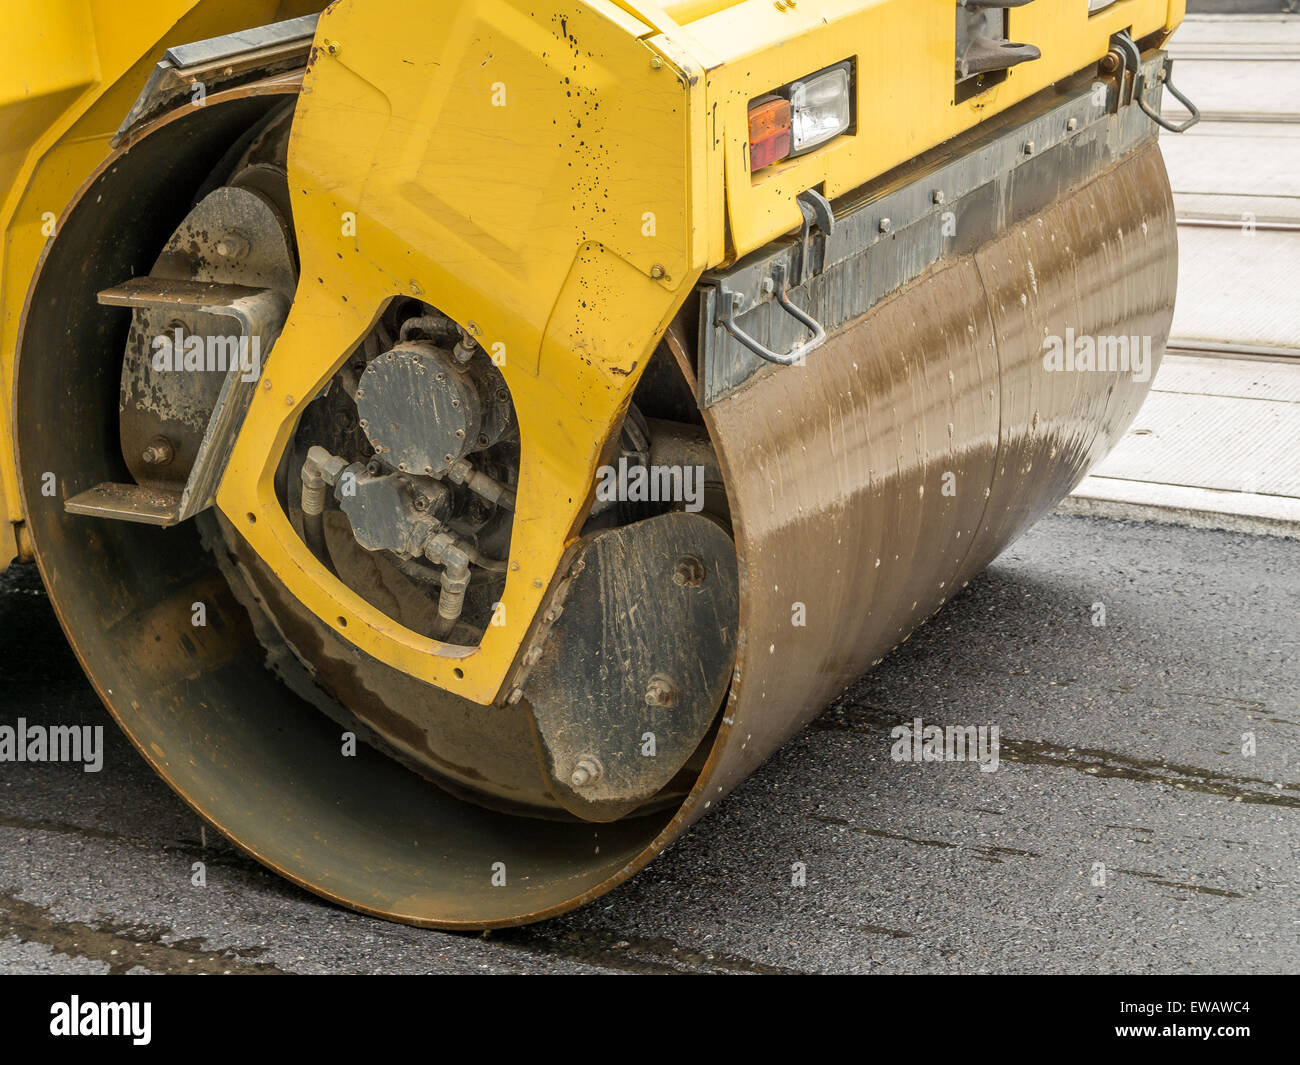 Gros plan du rouleau compresseur jaune frais lissage de la couche d'asphalte Banque D'Images